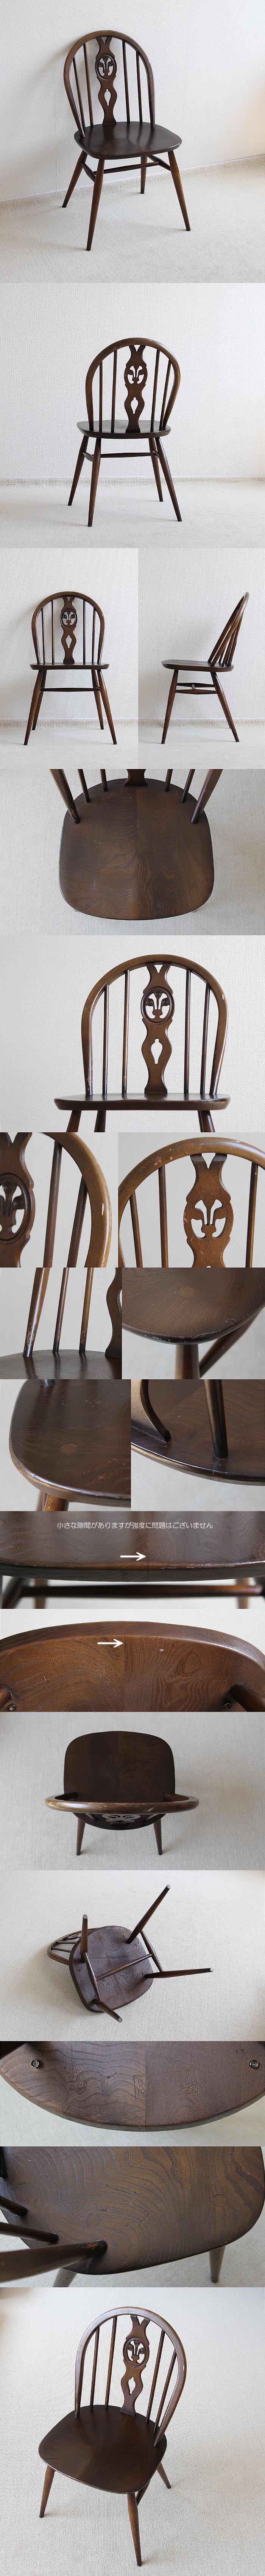 イギリス アンティーク アーコールチェア ERCOL 木製椅子 ダイニングチェア 家具「シスルバック」V-945